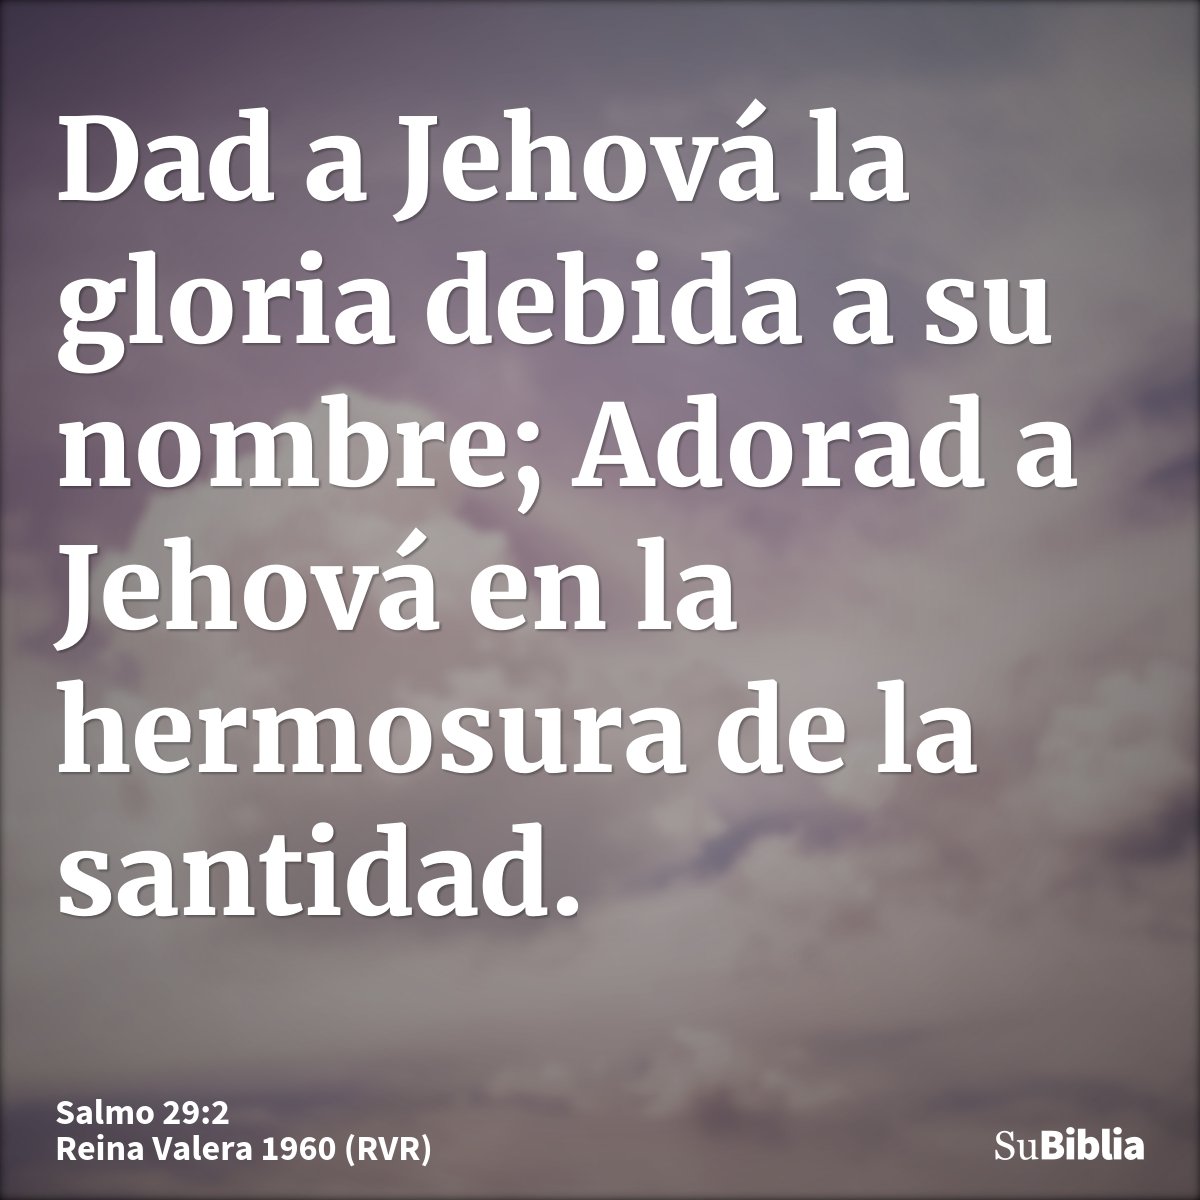 Dad a Jehová la gloria debida a su nombre; Adorad a Jehová en la hermosura de la santidad.